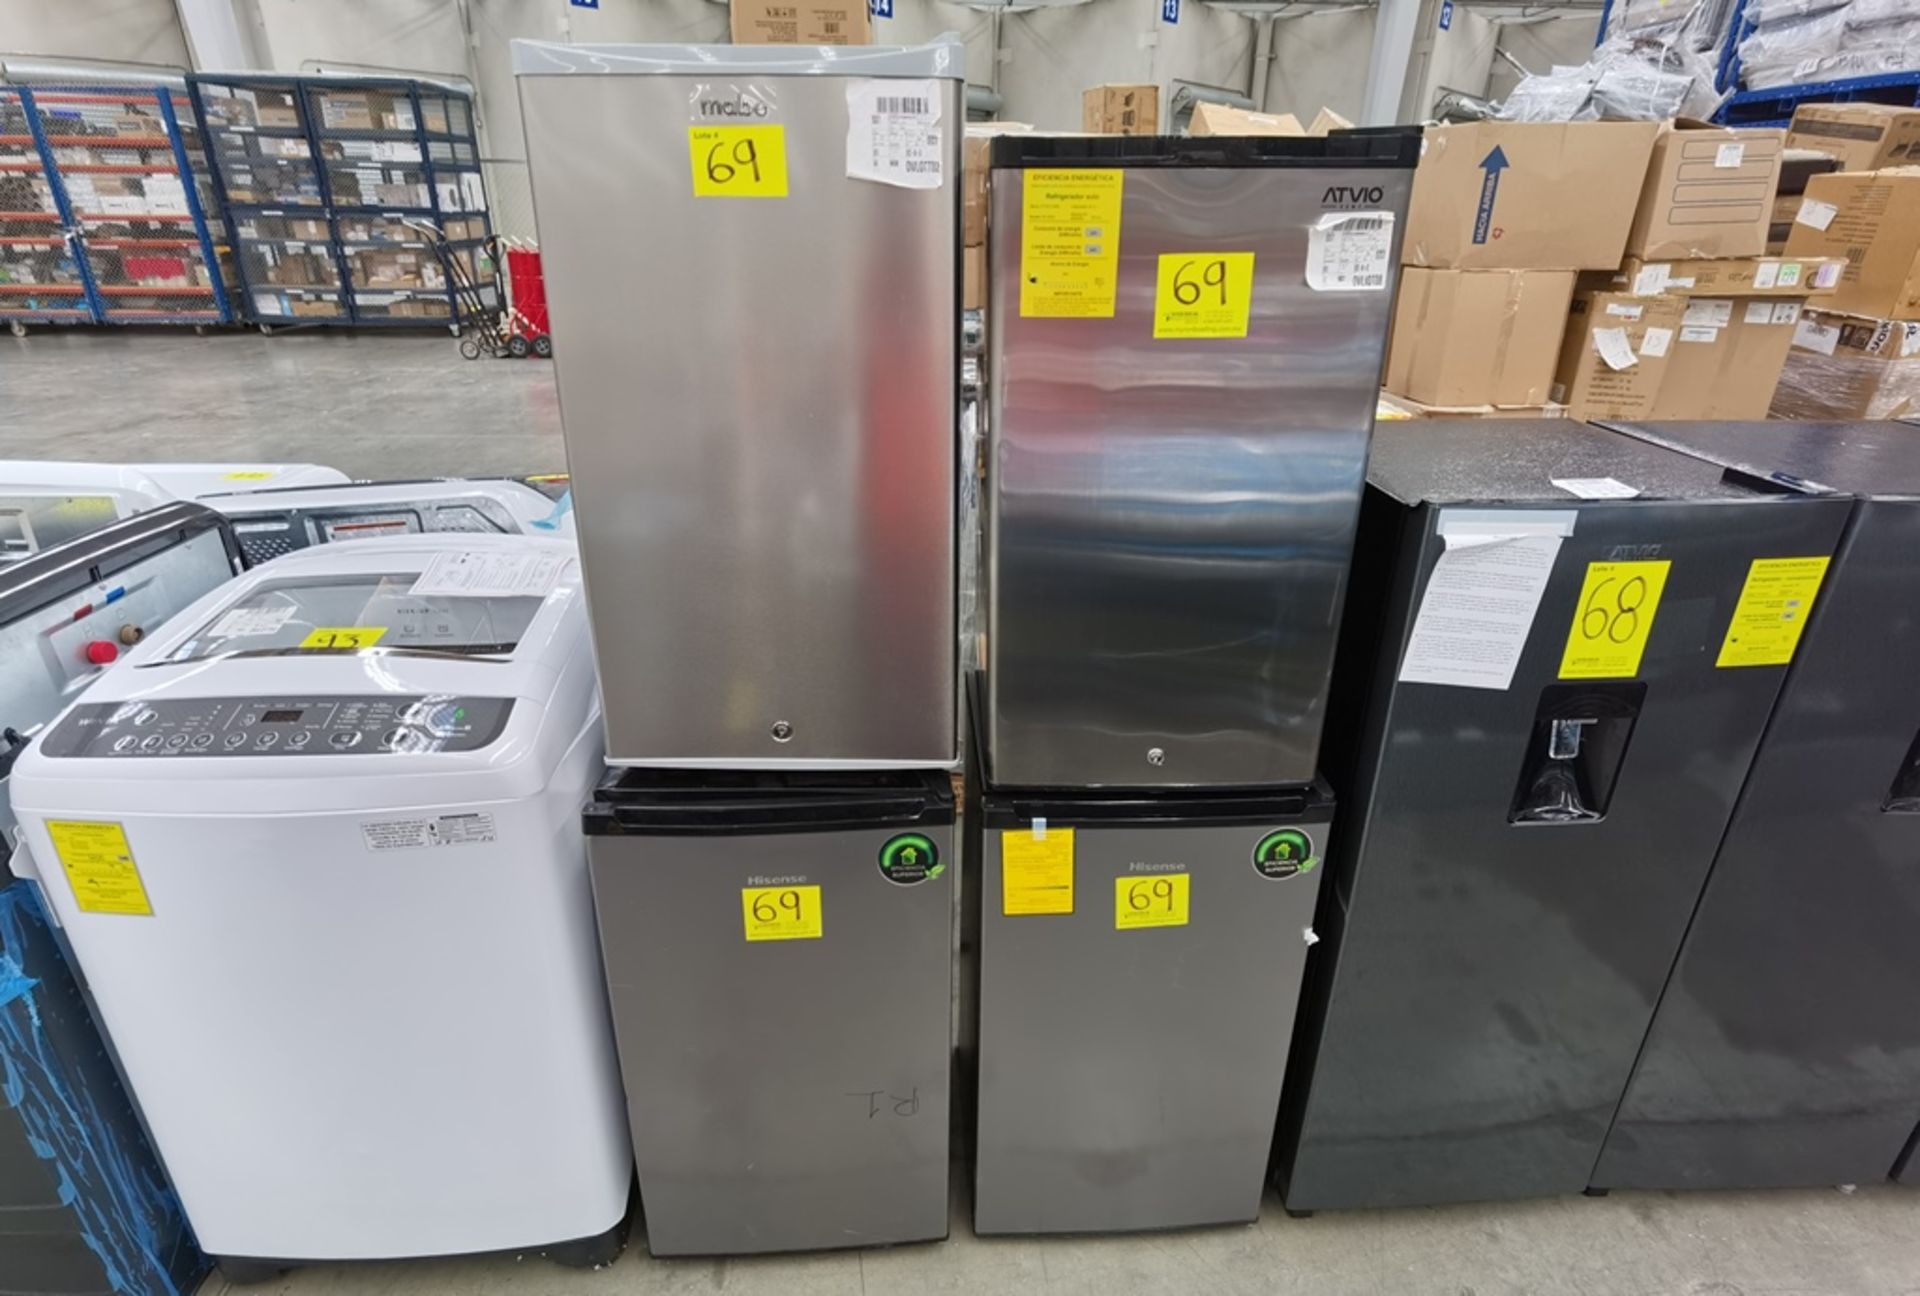 Lote De 4 Refrigeradores Contiene: 1 Refrigerador Marca Atvio, Modelo BC90SU, Serie N/D, Color Gris